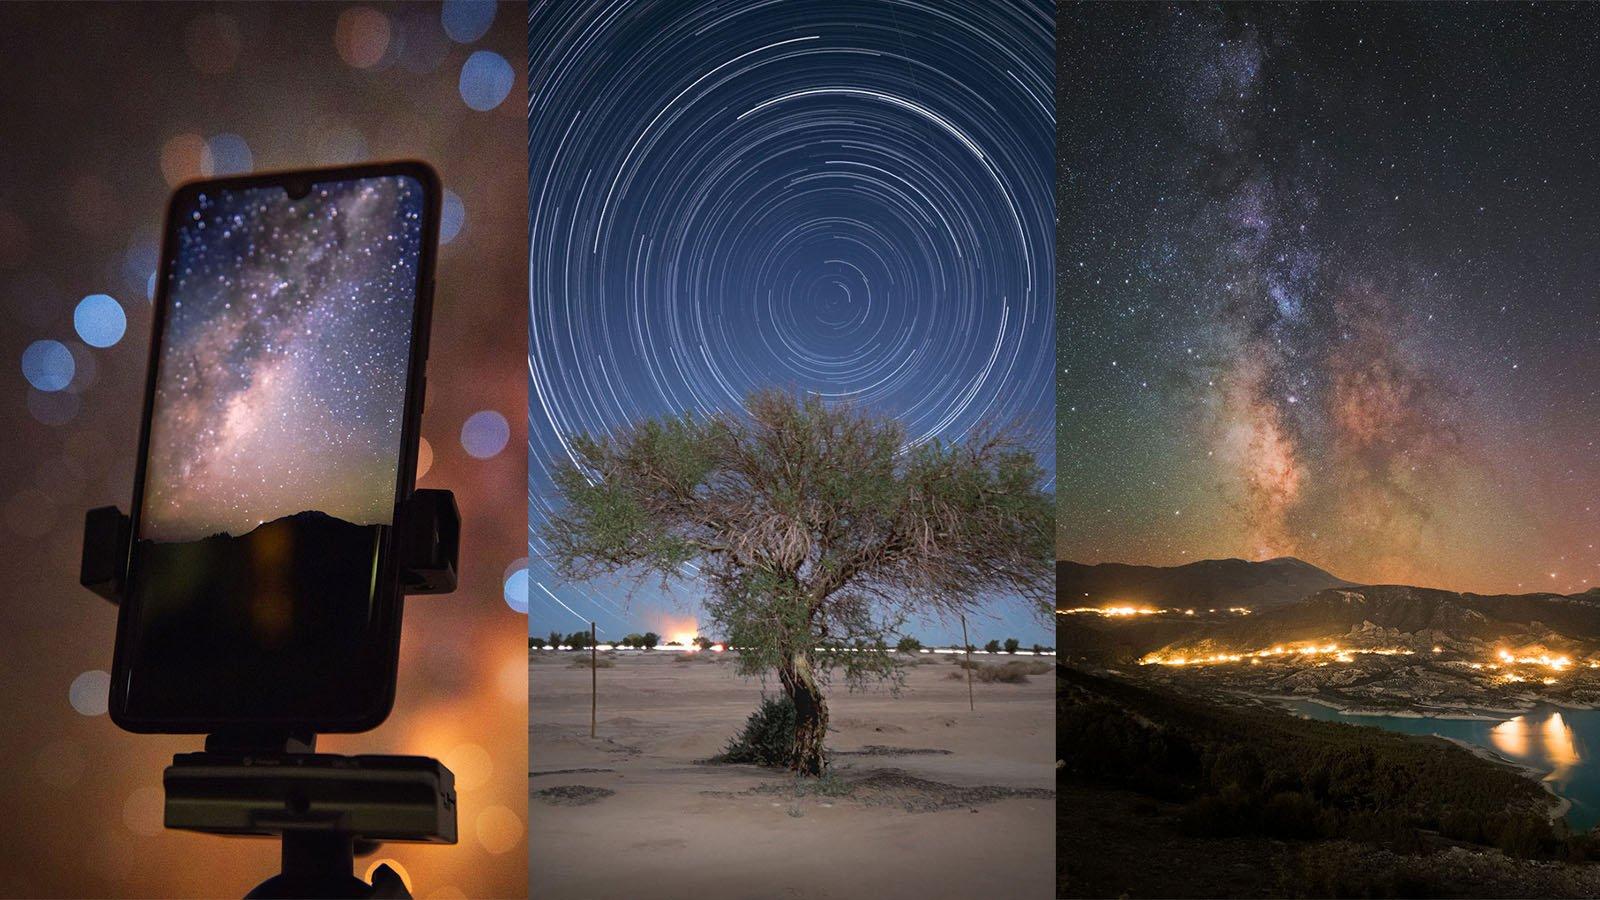 Bạn đang mong muốn có một chiếc điện thoại chụp ảnh tốt? Với các thiết bị thiên văn trời đêm, bạn có thể hoàn toàn chụp được những bức ảnh đầy sáng tạo và độc đáo. Hãy nhấn vào hình ảnh để khám phá những bức ảnh thiên văn tuyệt đẹp do các nhà nhiếp ảnh chụp bằng điện thoại.